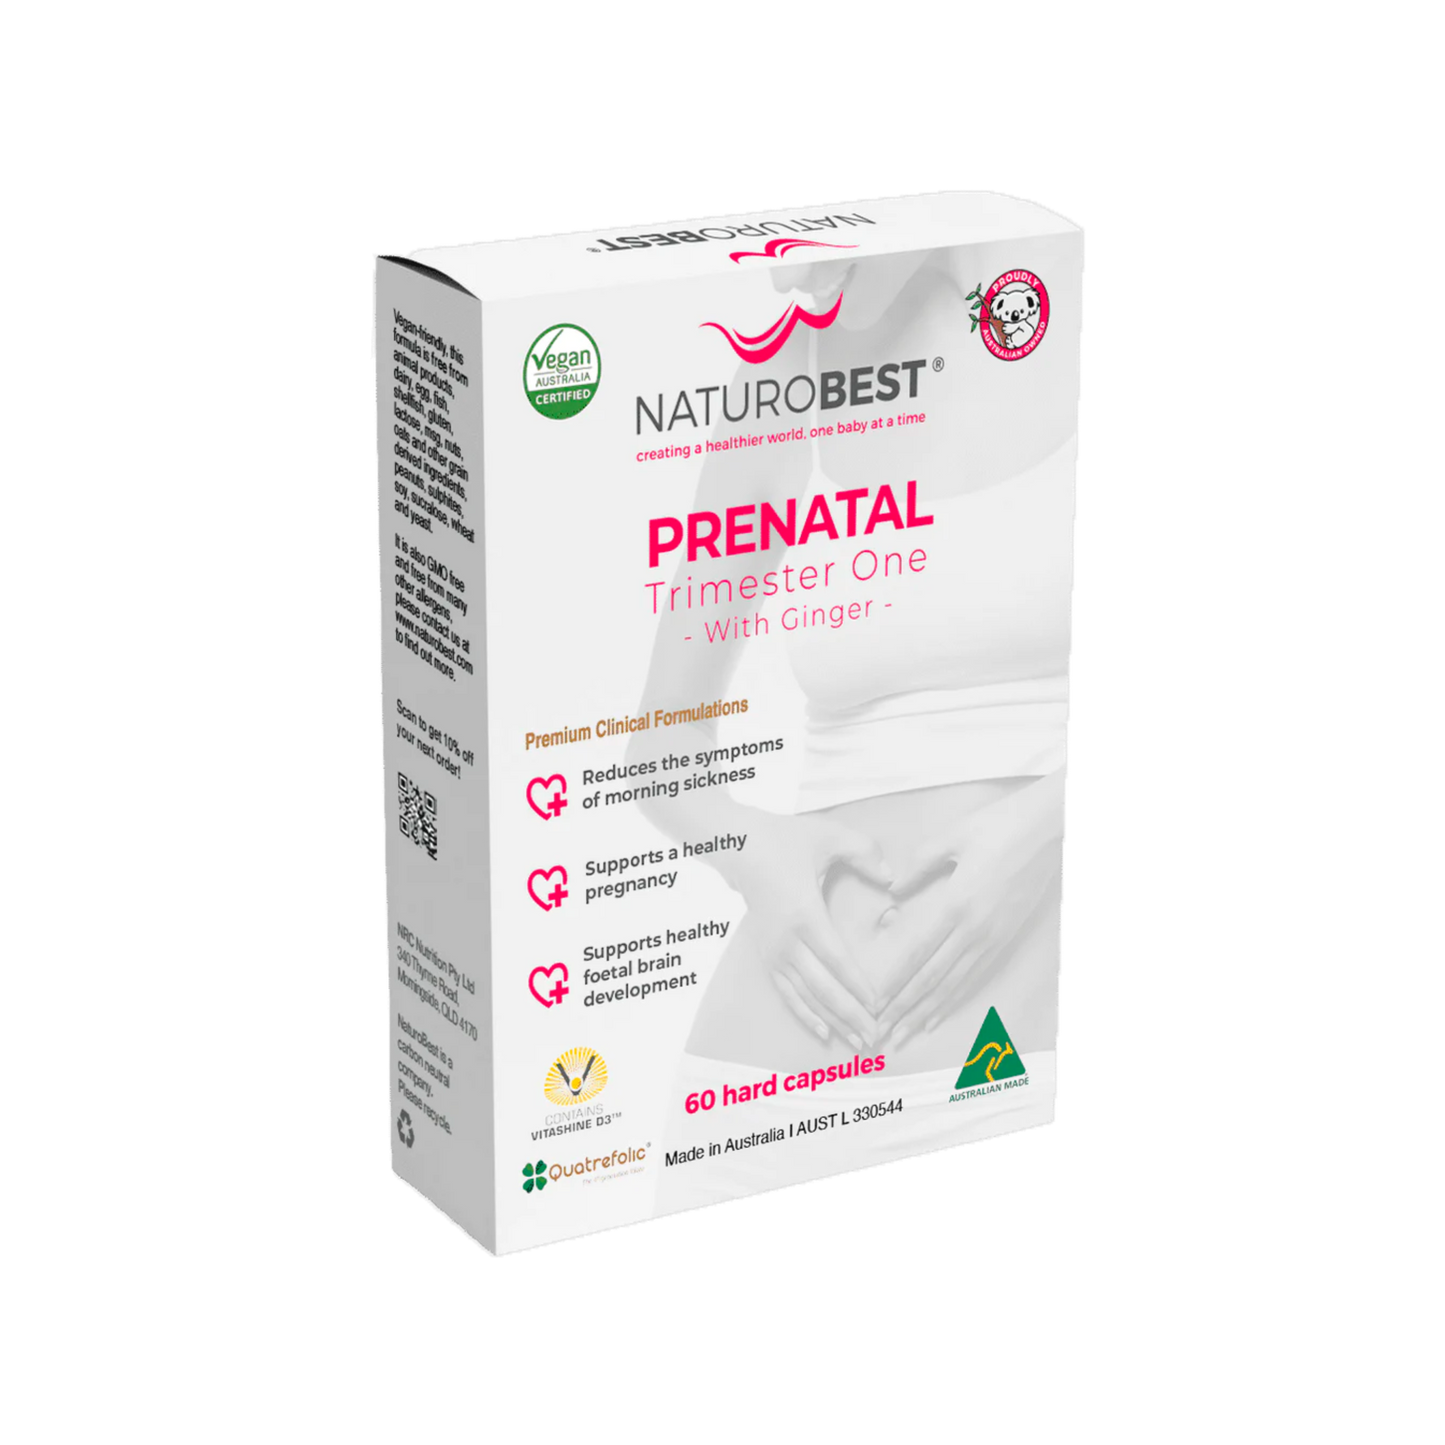 NaturoBest Prenatal Trimester 1